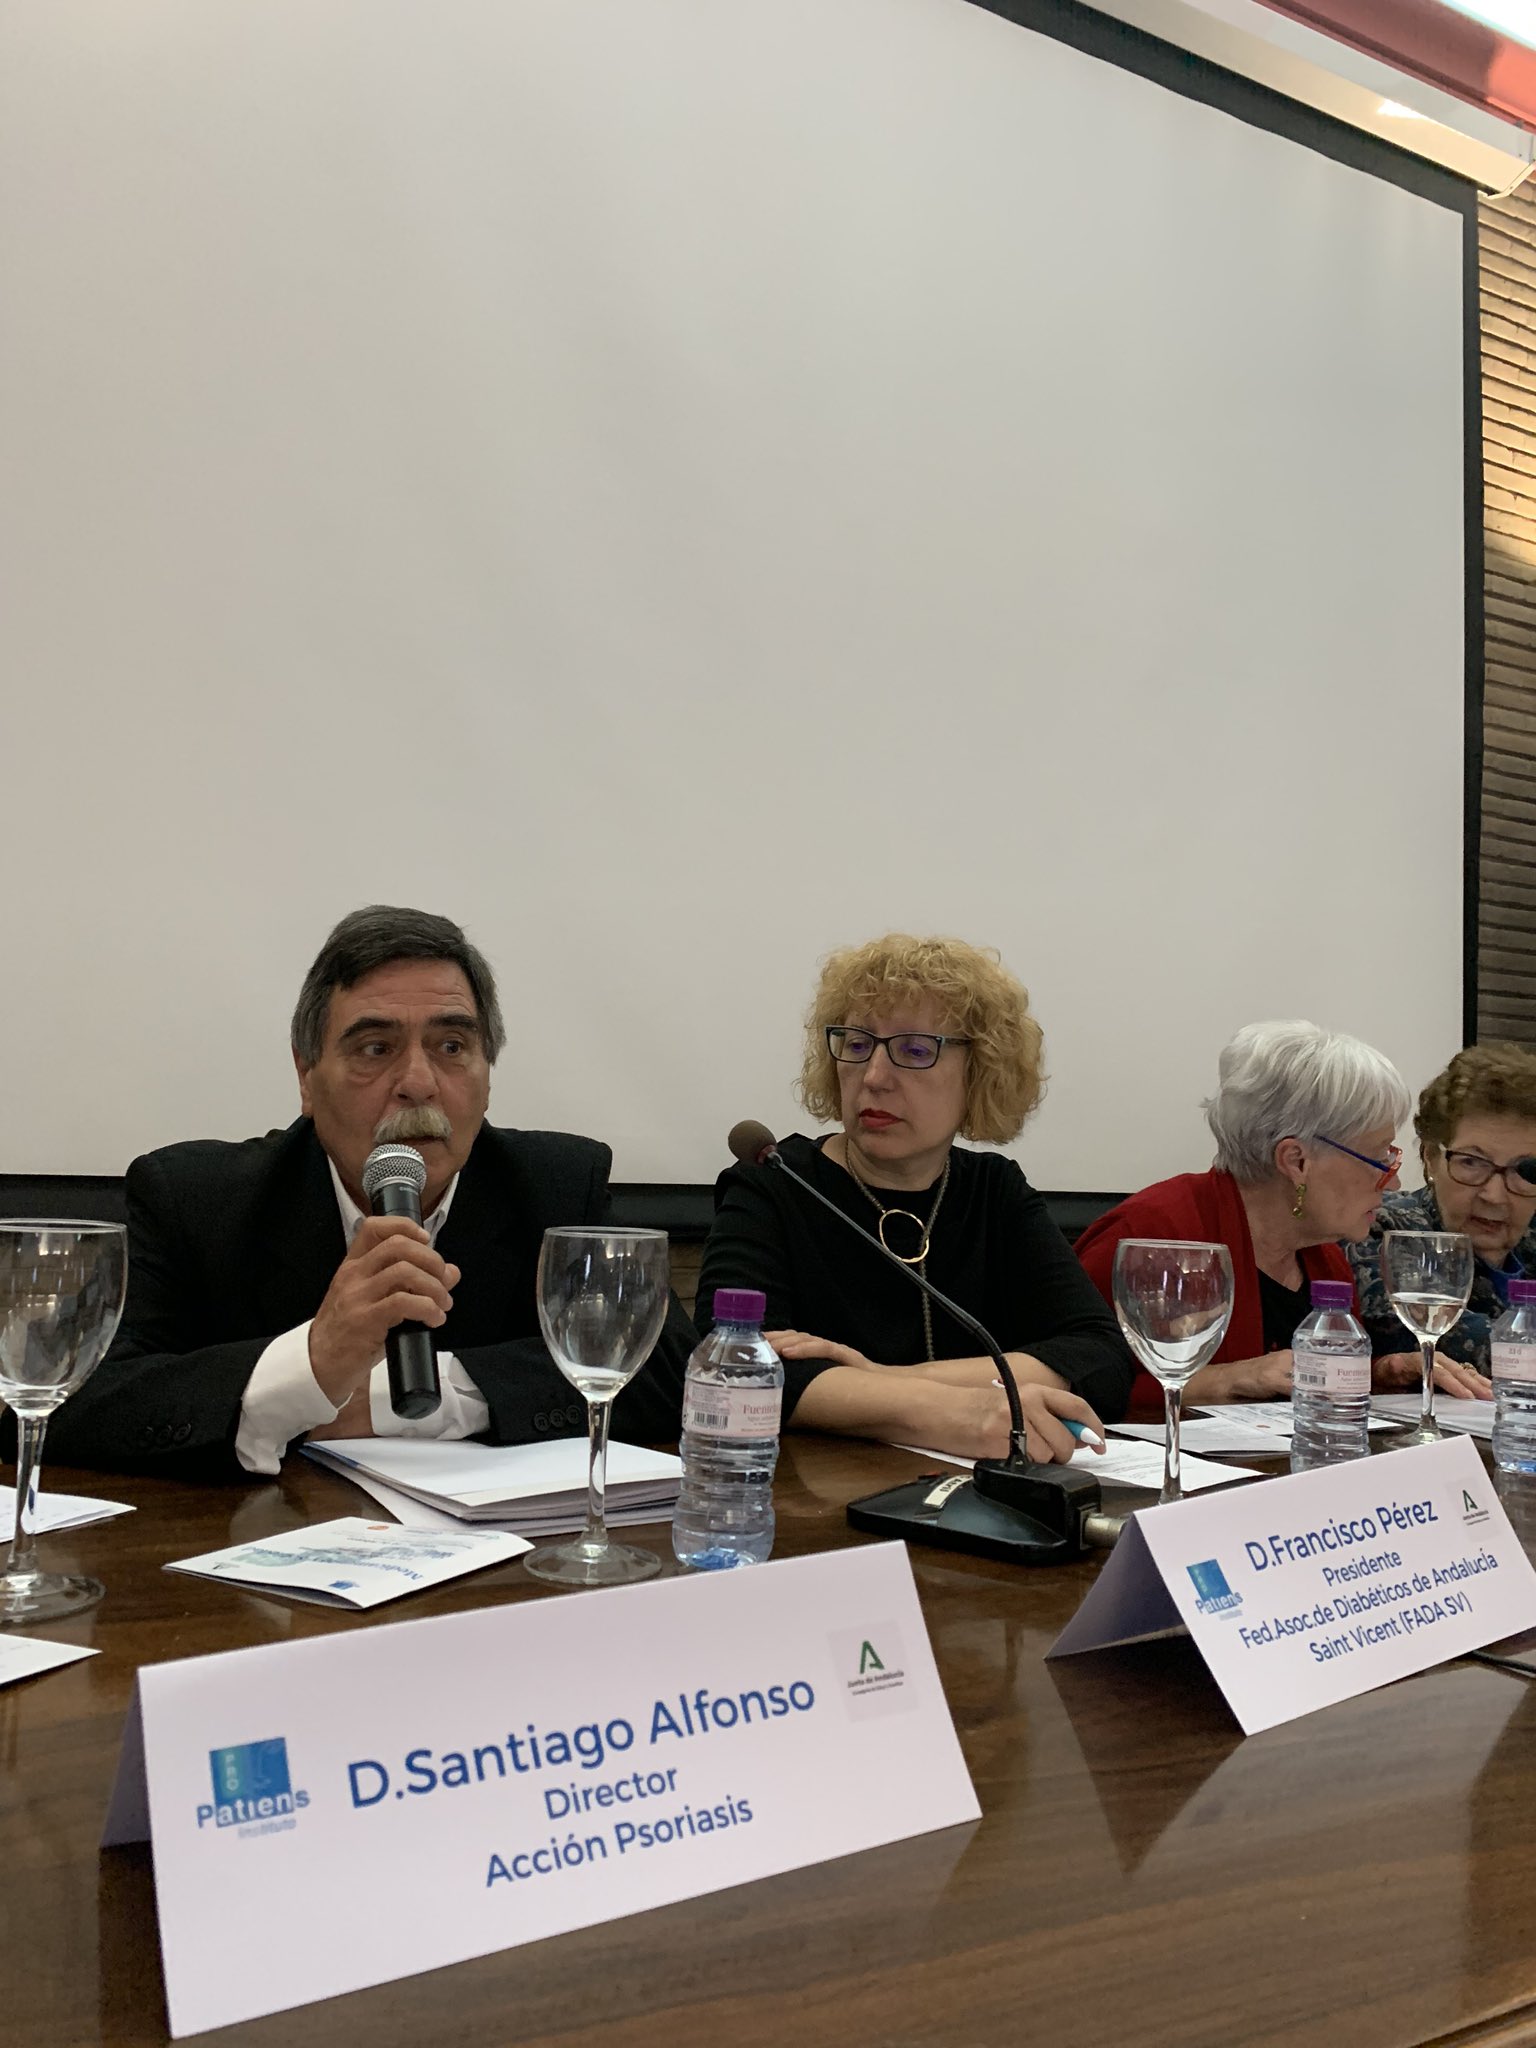 ERsRoWOWoAAzBQG - El Instituto ProPatiens celebra en Sevilla la “Jornada Medicamento y Sociedad: Las Asociaciones de Pacientes en Andalucía”